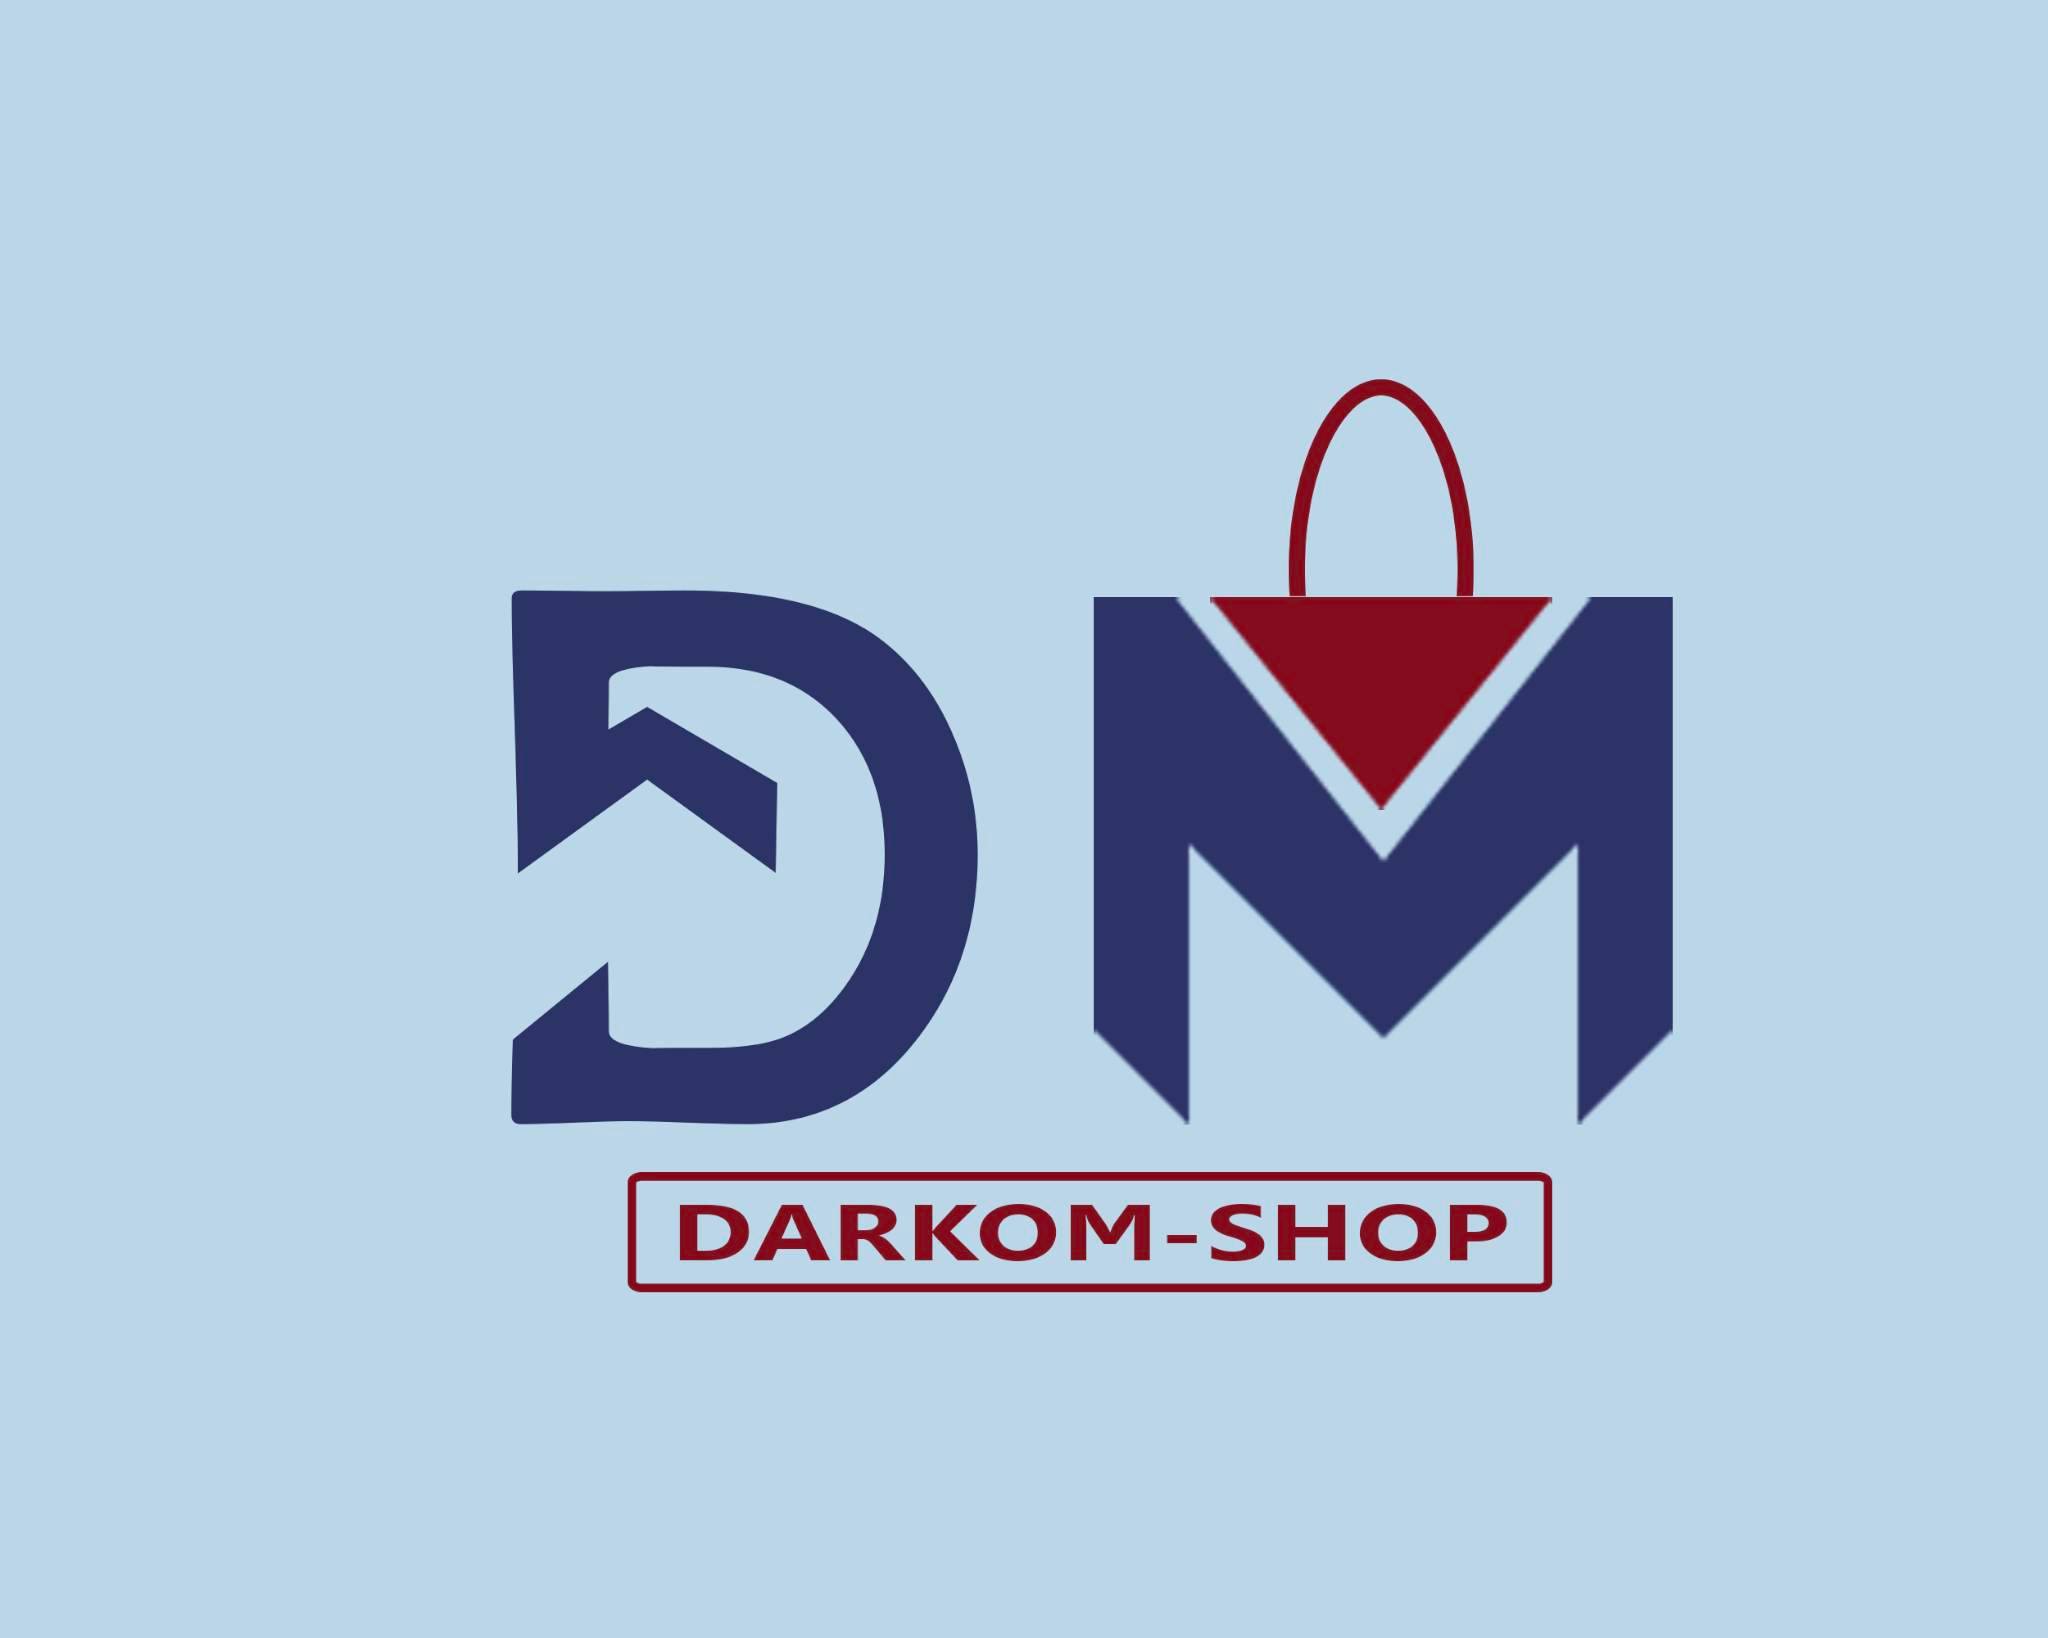 Darkom-shop